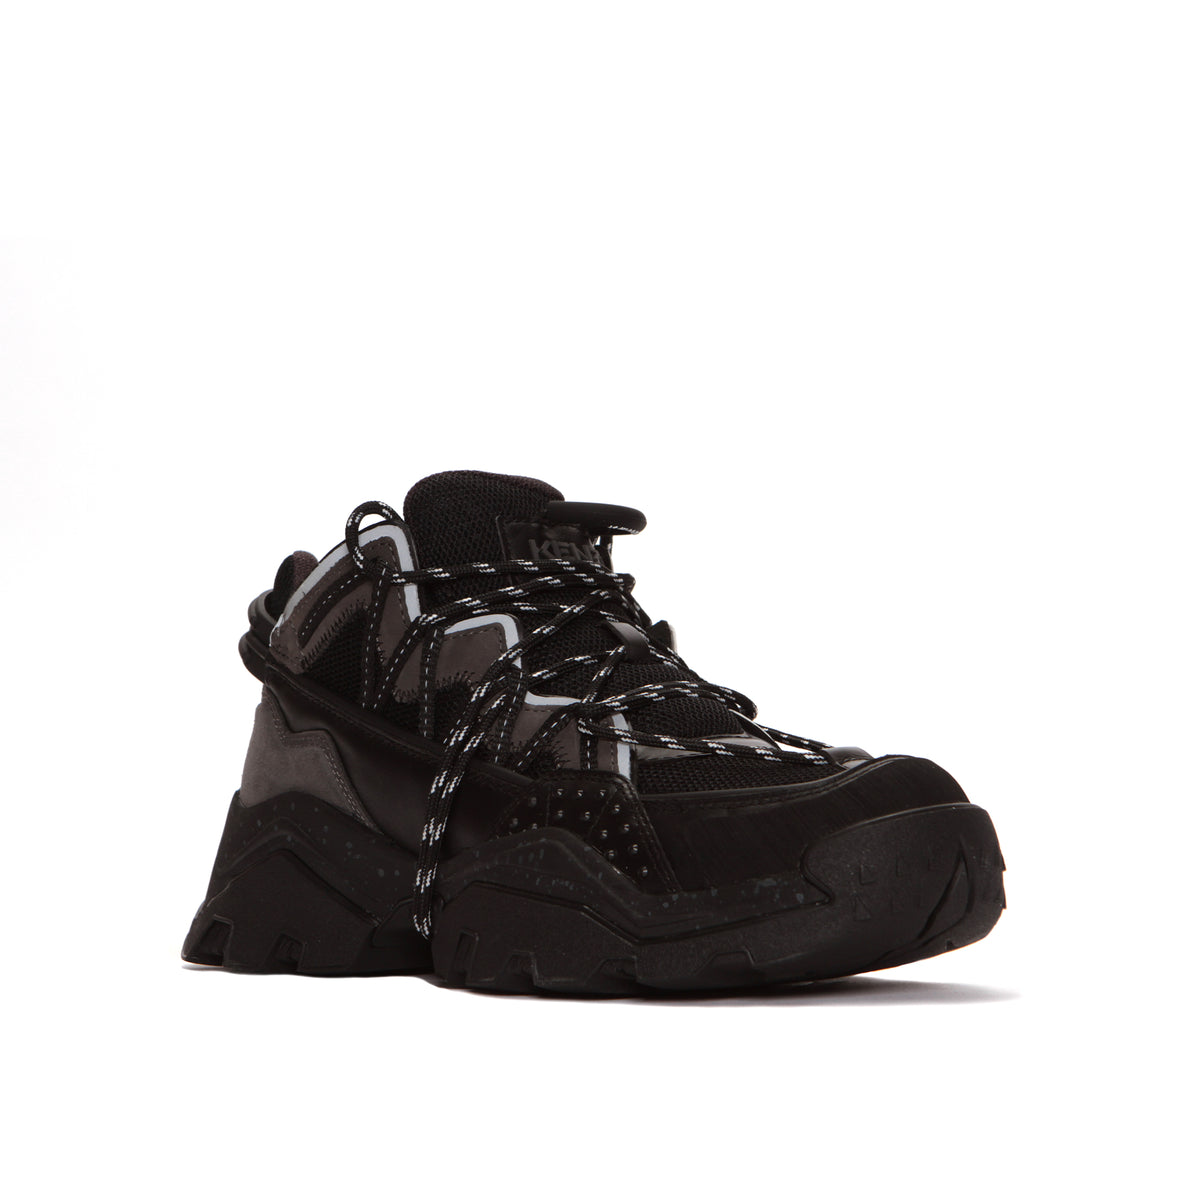 Kenzo Paris Inka Low Top Men's Chunky Sneakers Black